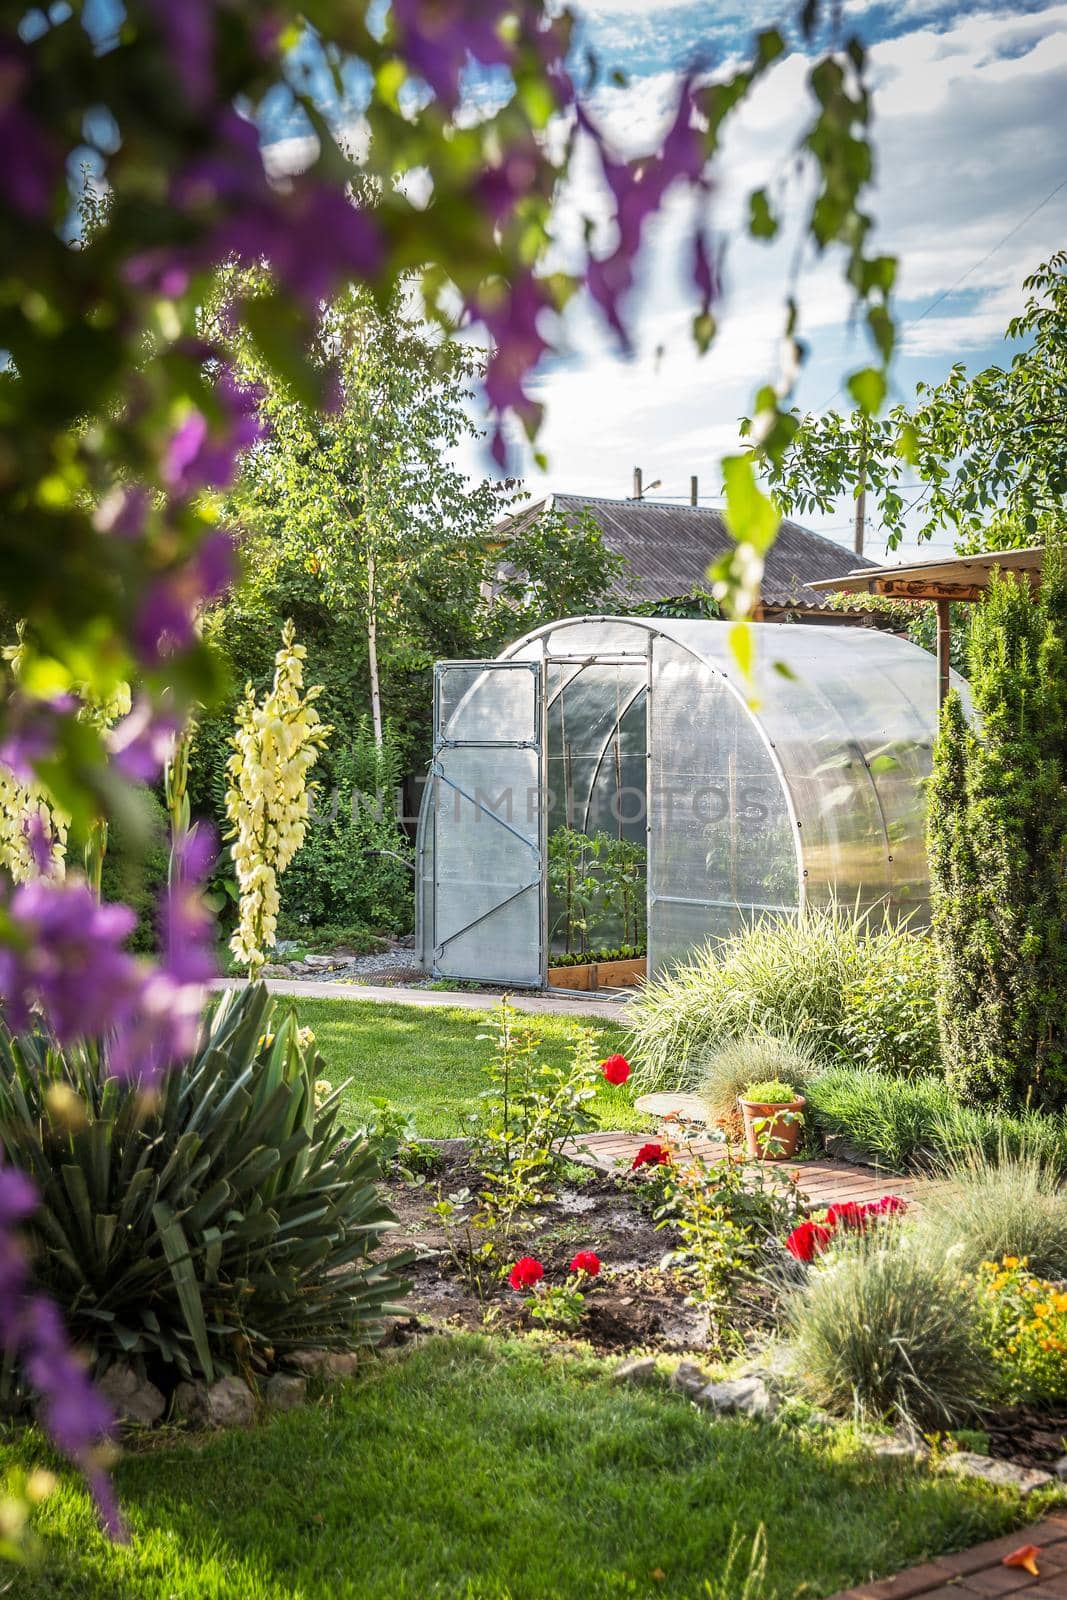 Greenhouse in garden with open door